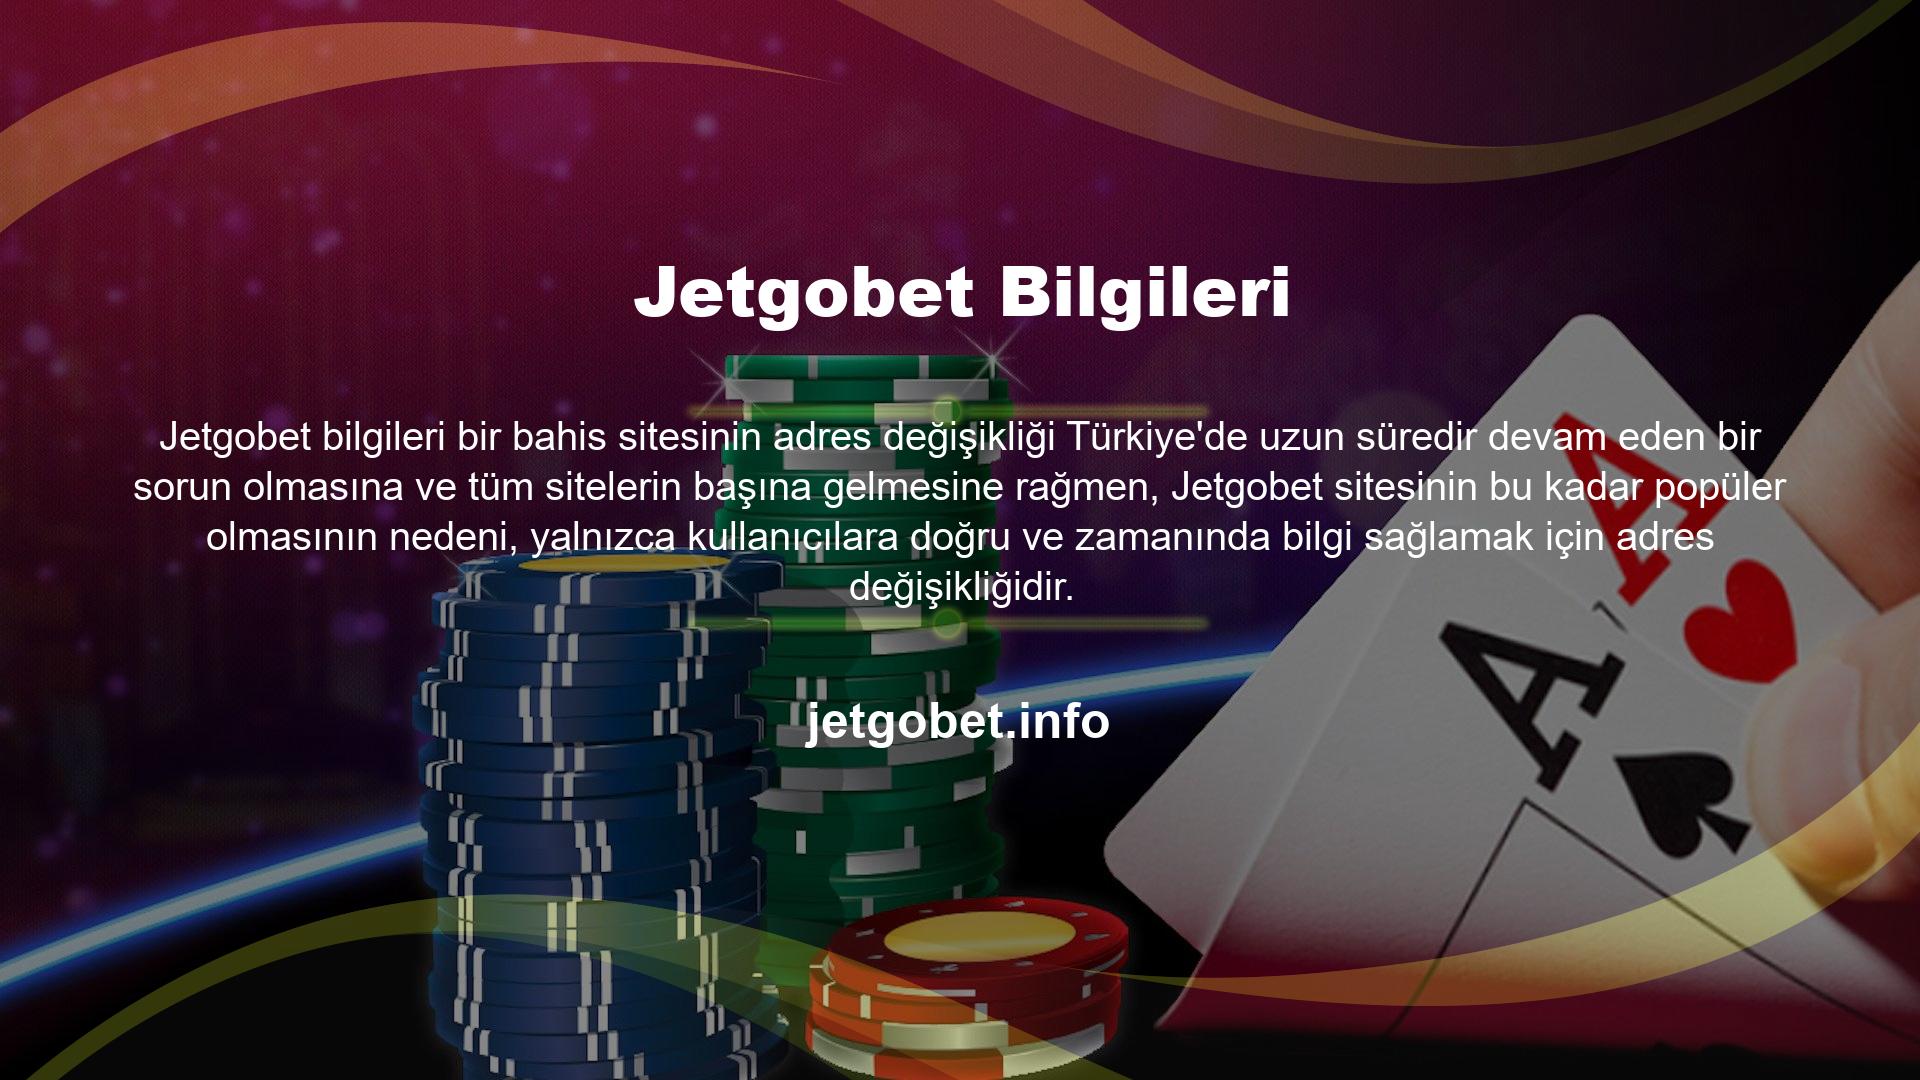 Aslında Jetgobet web sitesi birkaç dakikadan fazla bir süredir kapalı ve yeni web sitesi giriş adresi hala geçerli